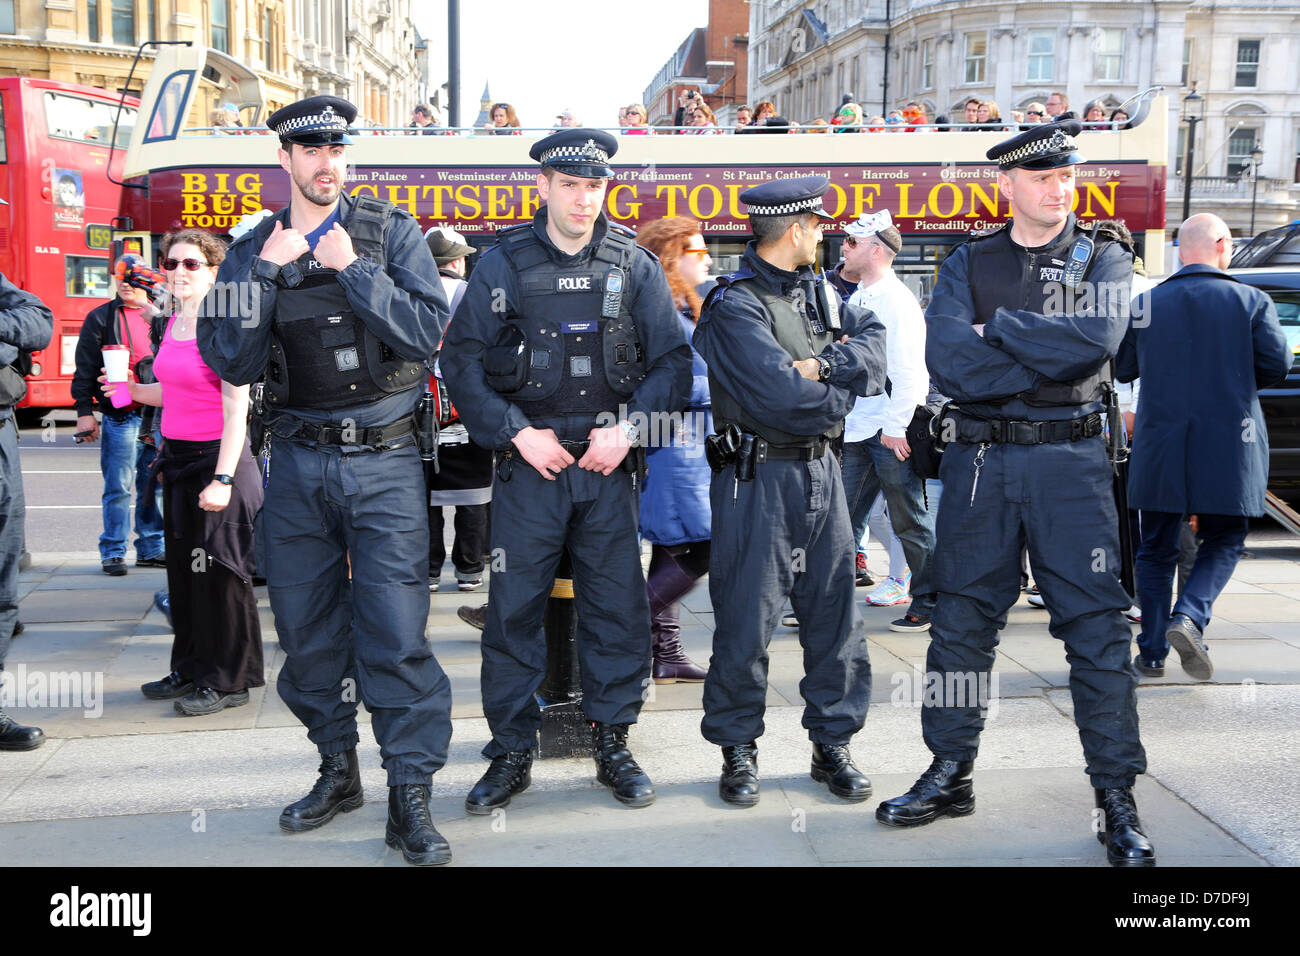 Londres, Royaume-Uni. 4e mai 2013. La police au Royaume-Uni anonyme manifestation anti-austérité, Londres, Angleterre. Crédit : Paul Brown / Alamy Live News Banque D'Images